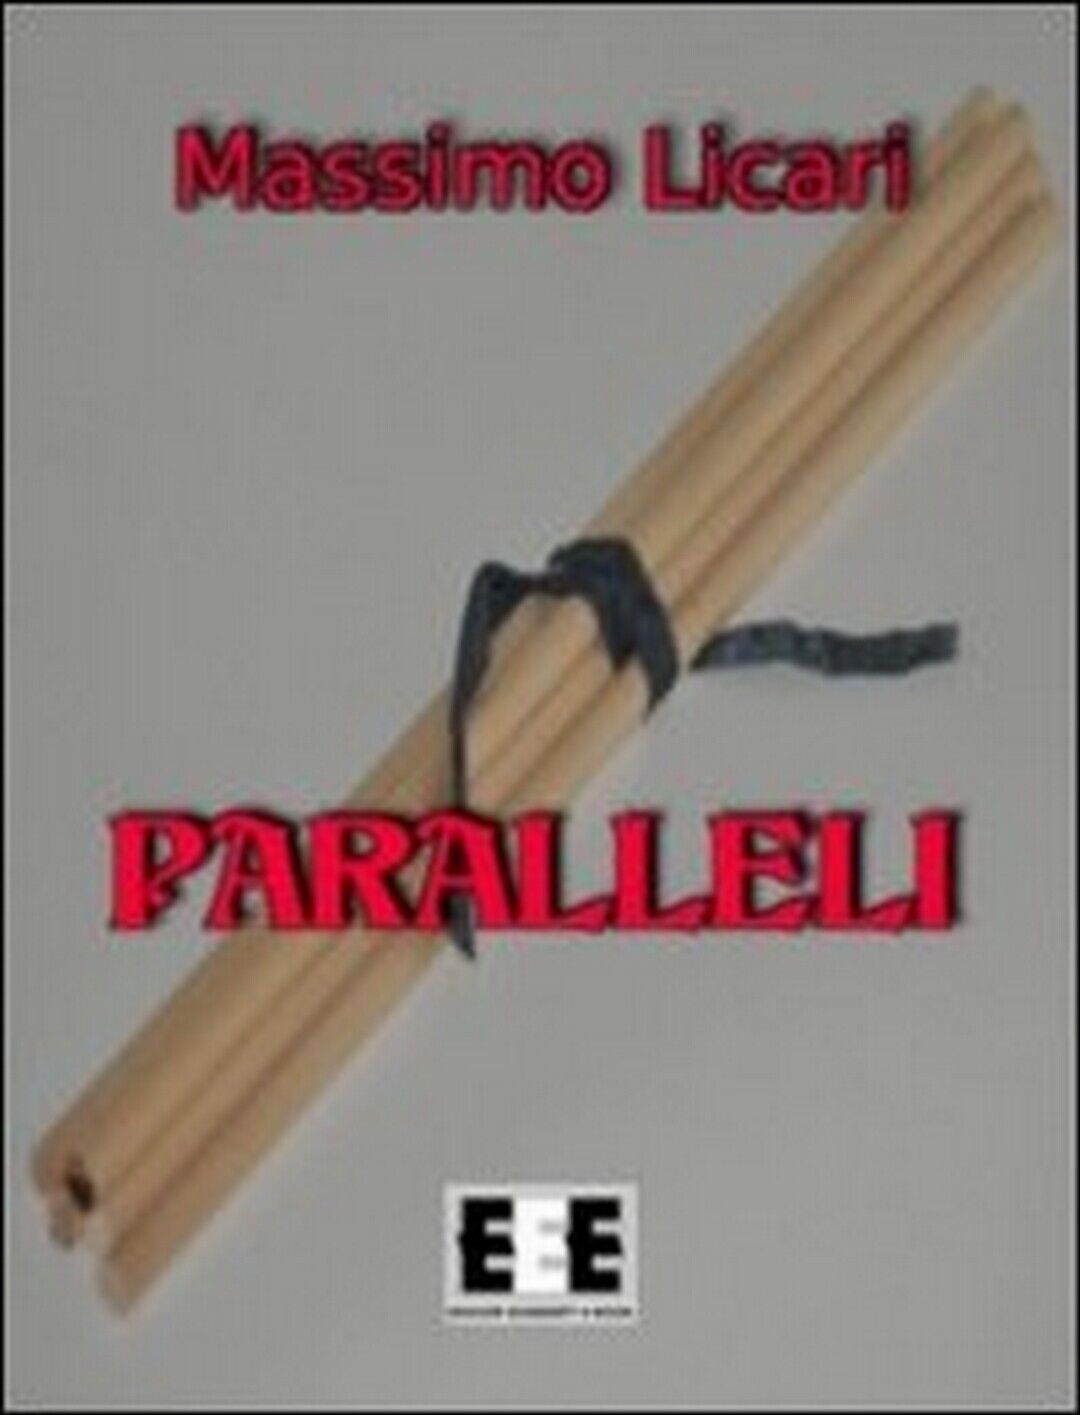 Paralleli  di Massimo Licari,  22,  Eee-edizioni Esordienti